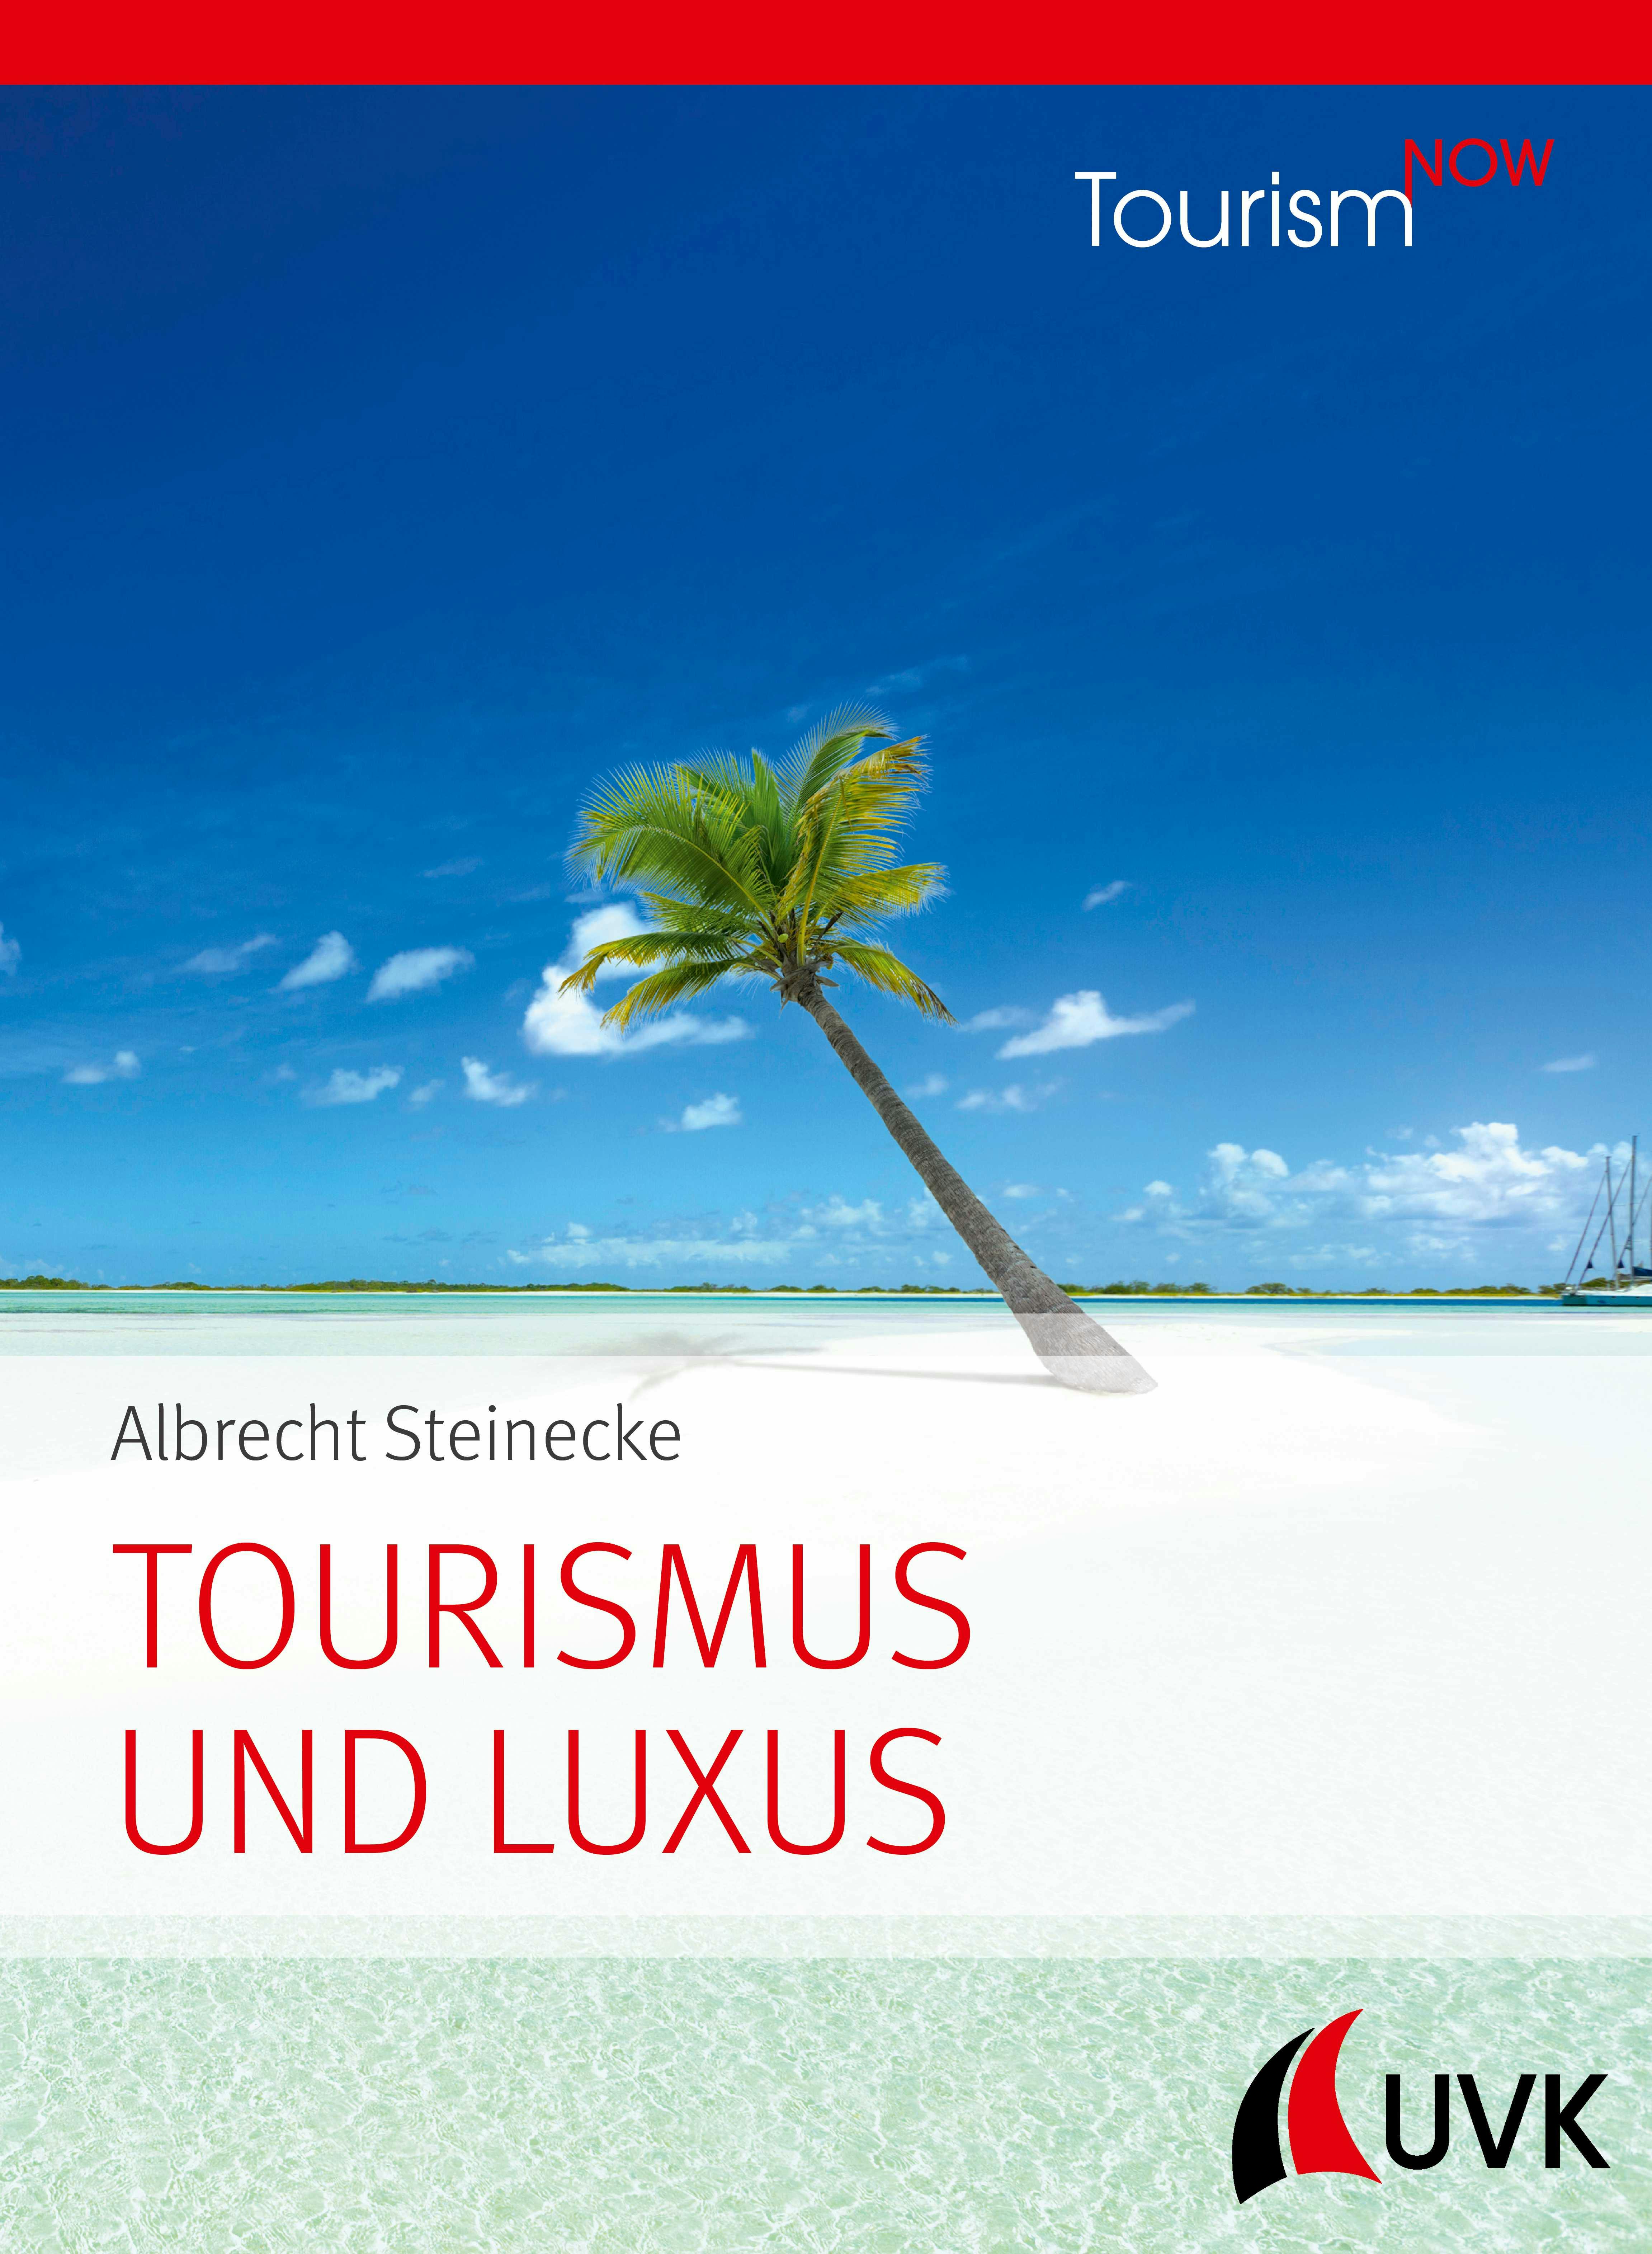 Tourismus und Luxus: Tourism NOW - Albrecht Steinecke